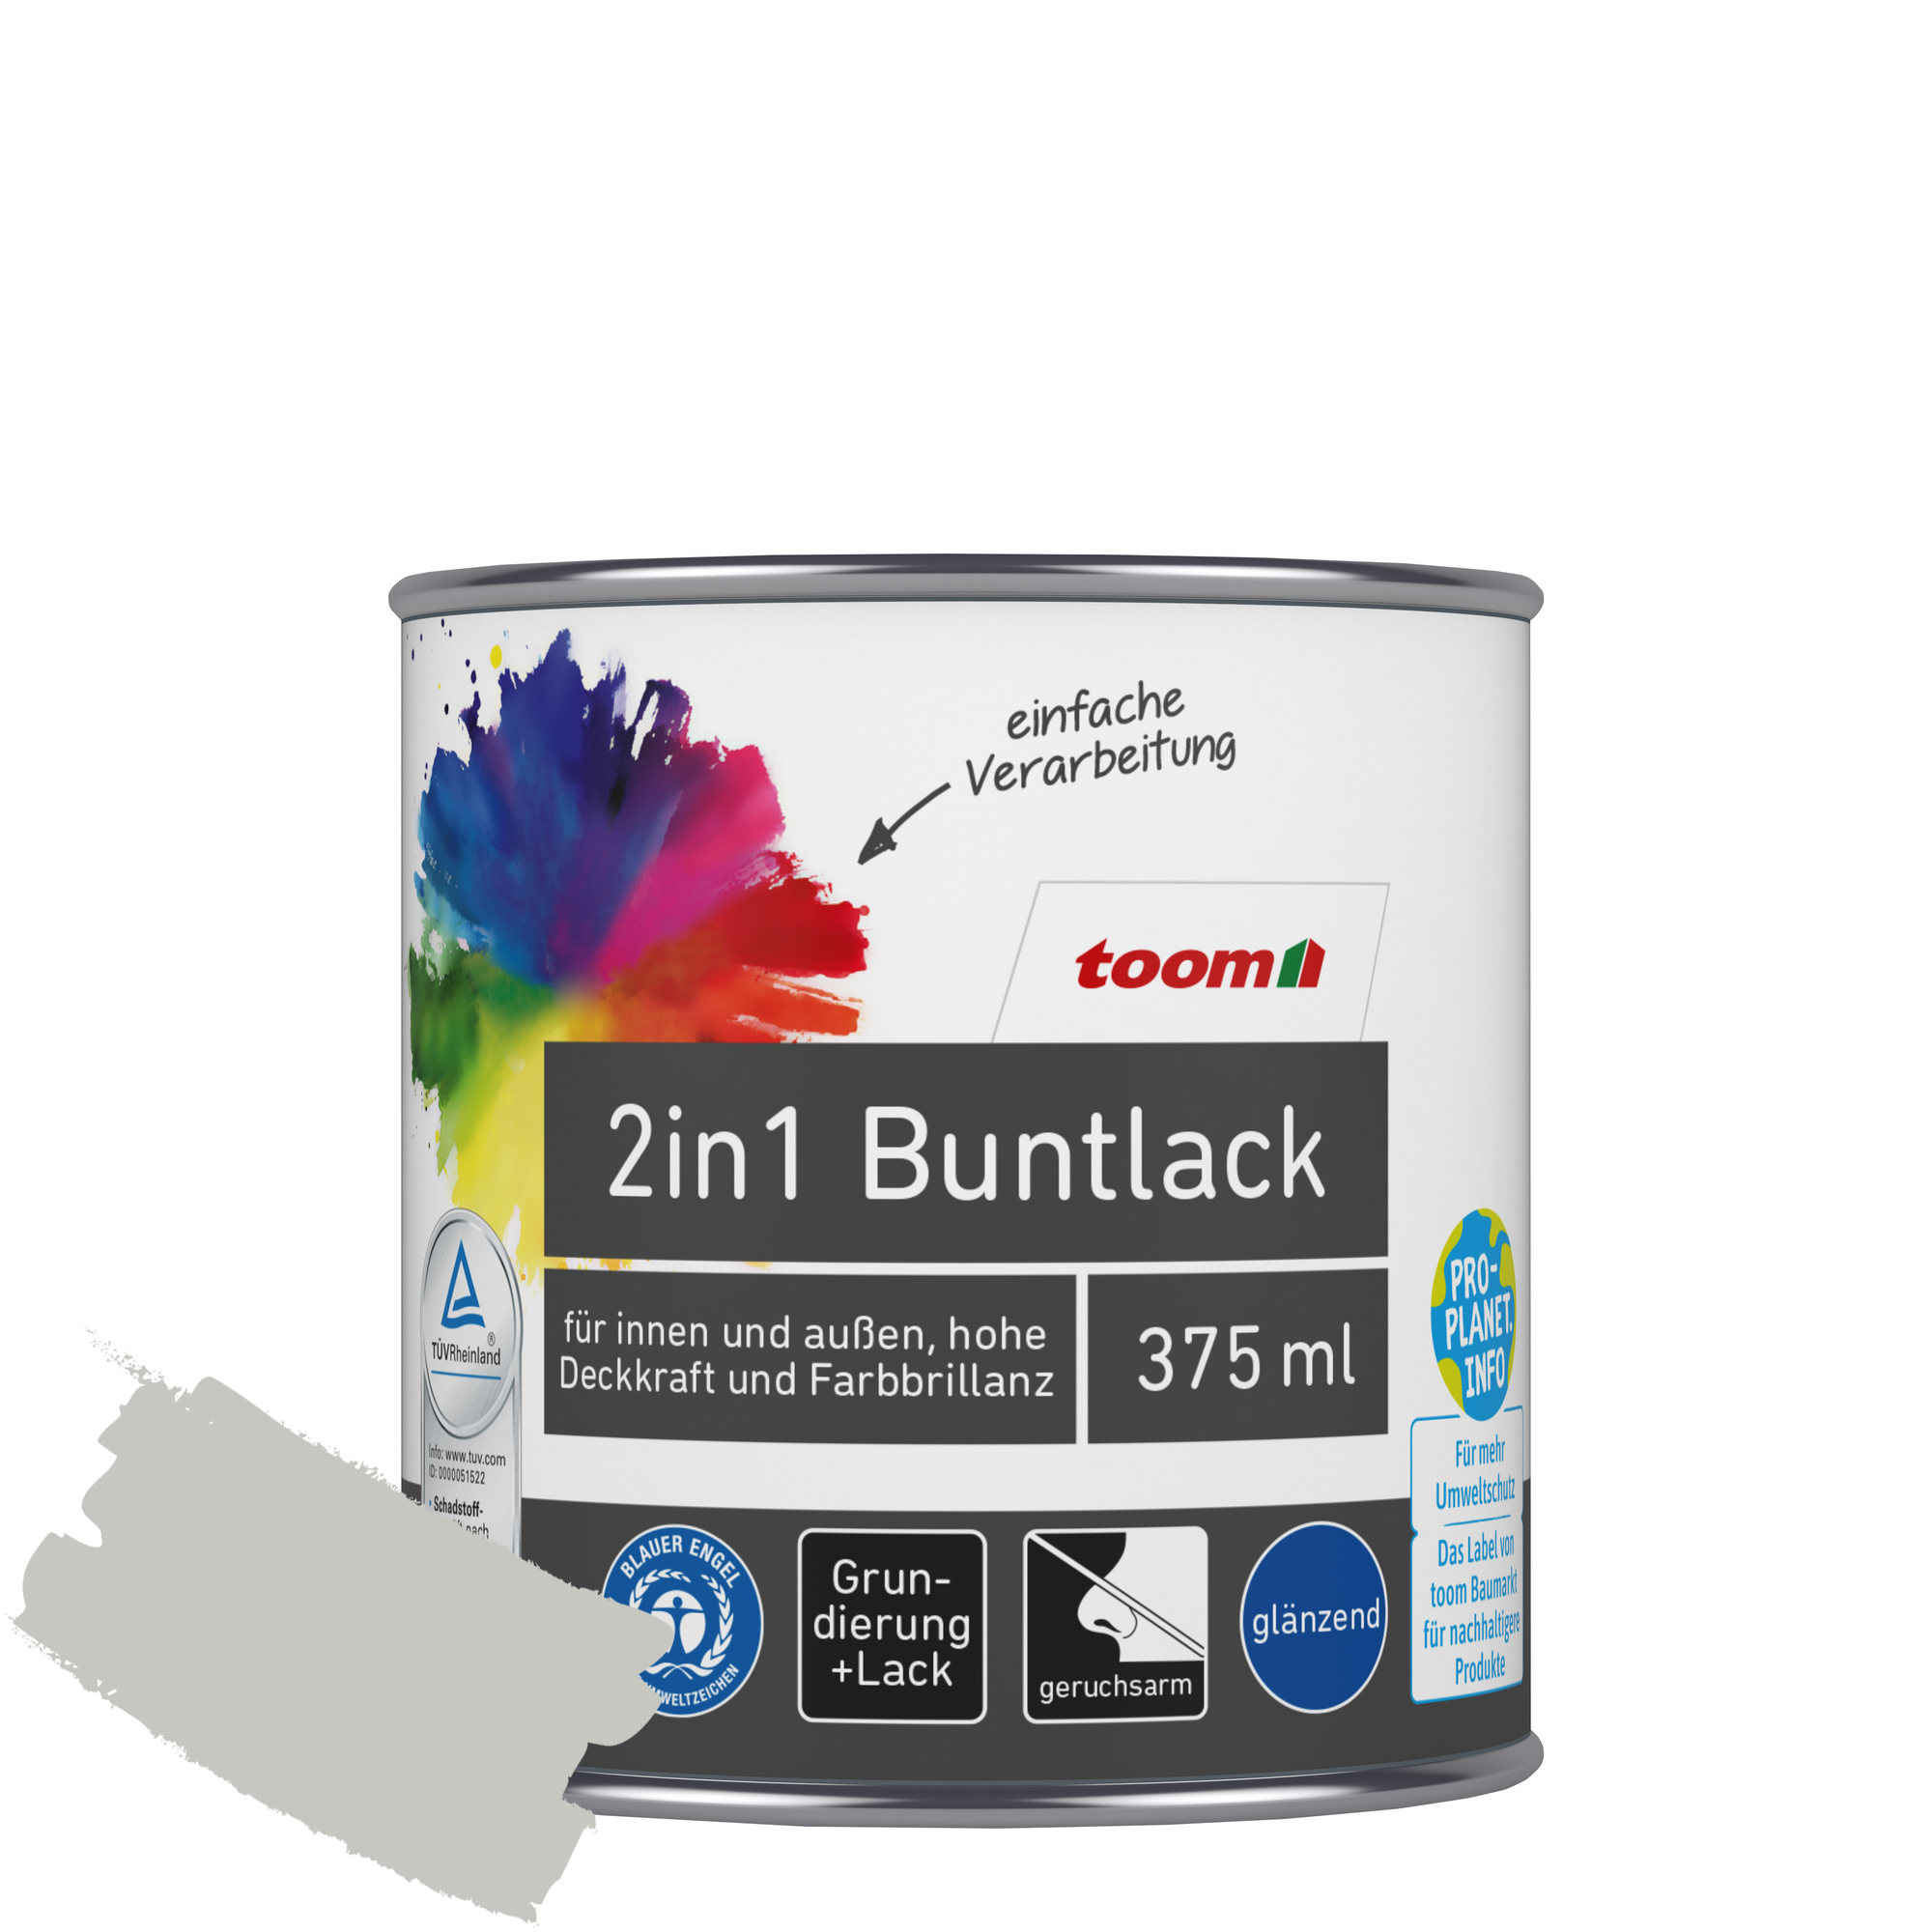 2in1 Buntlack 'Mondschein' lichtgrau glänzend 375 ml + product picture